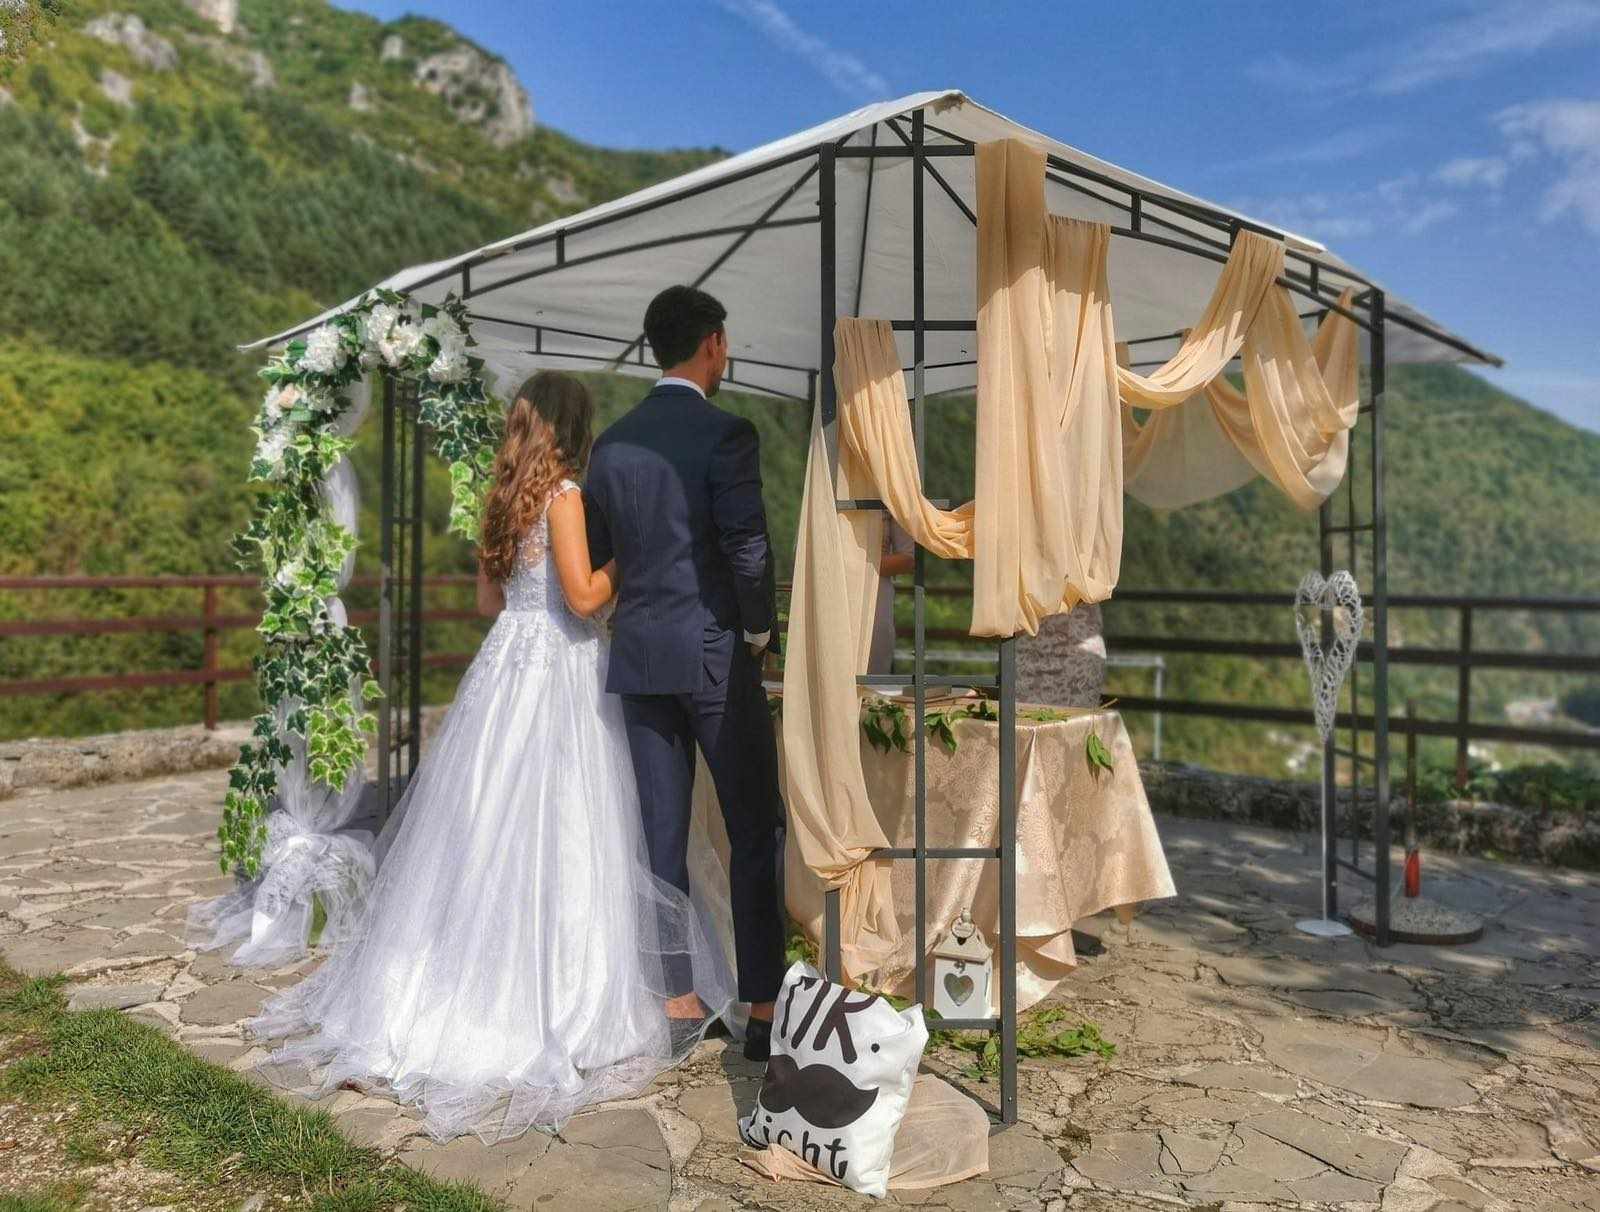 Besplatna vjenčanja u Općini Travnik